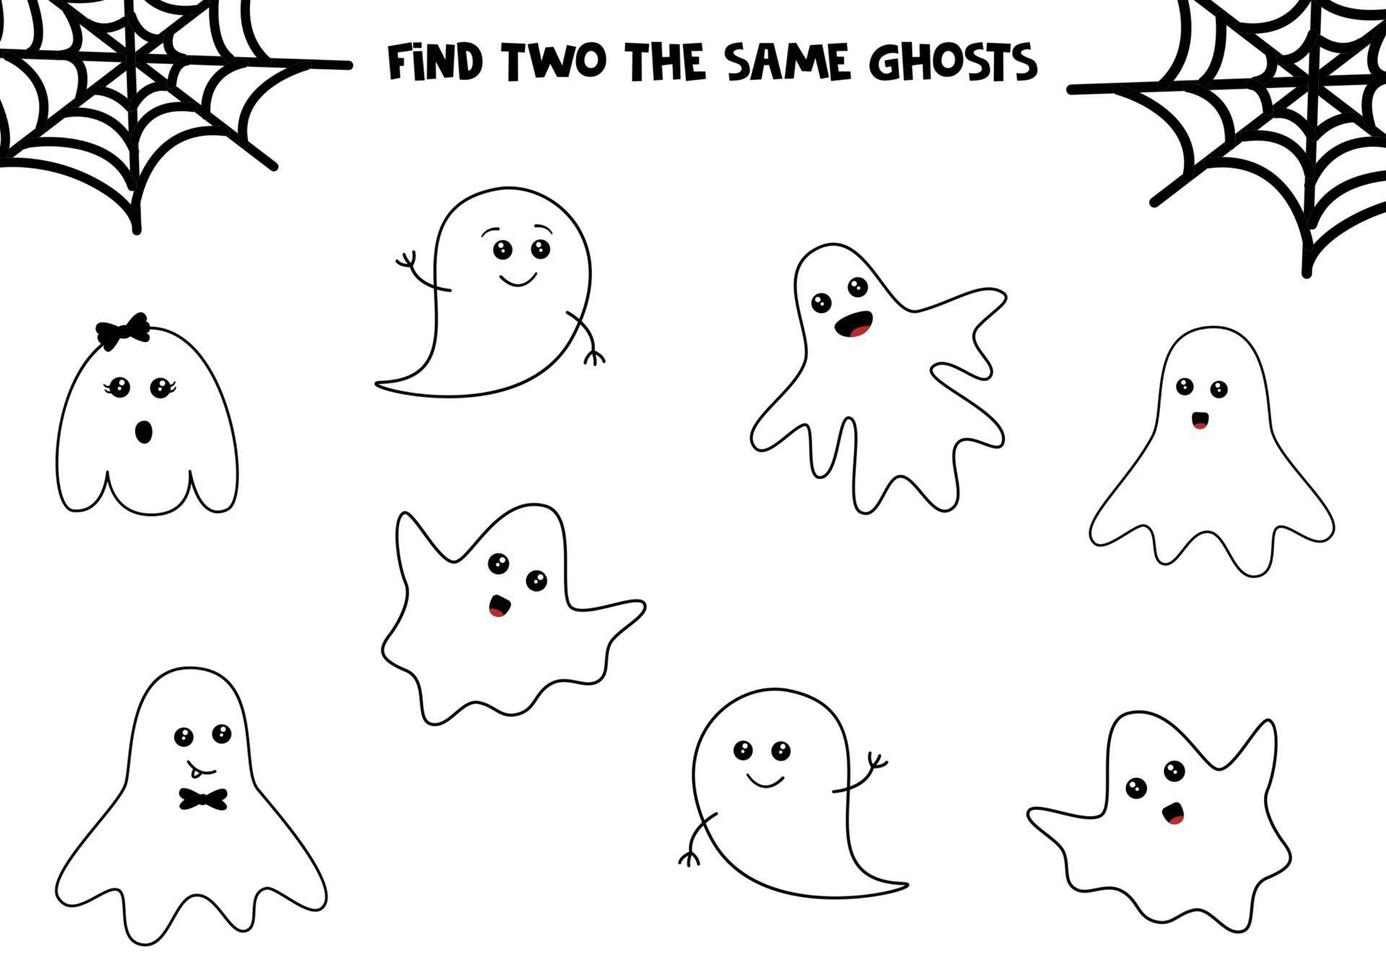 conjunto de giros fantasmas de halloween. encontre dois fantasmas iguais. jogo educativo para crianças. planilha para impressão. vetor